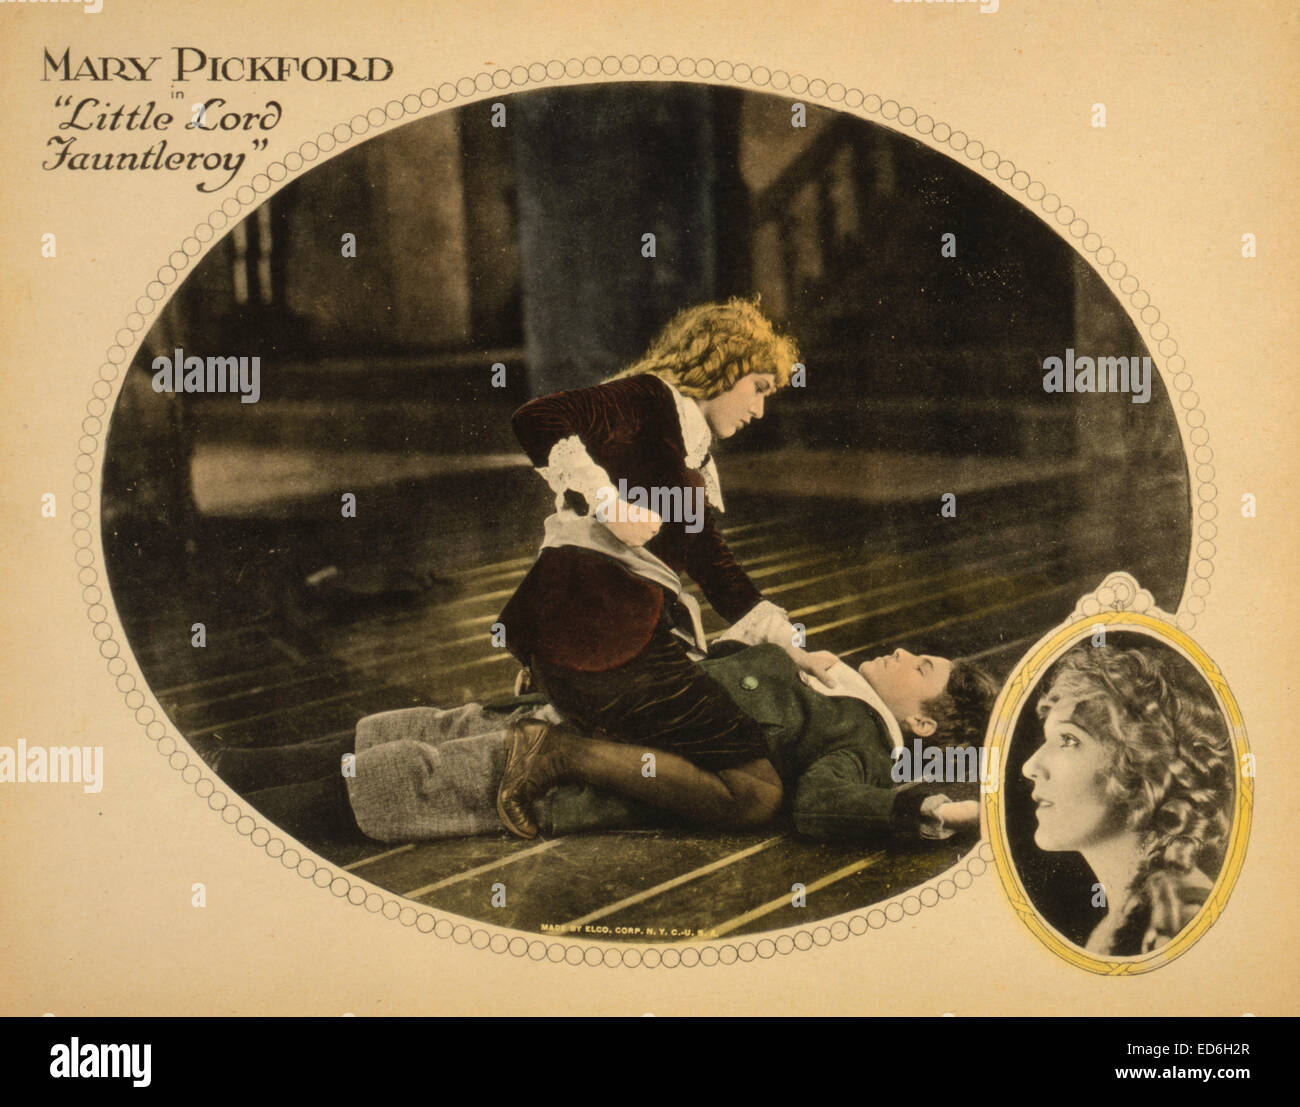 Tarjeta Lobby mostrando Maria Pickford acerca de perforar el actor Francis Marion durante una escena de la película 'Little Lord Fauntleroy', 1921 Foto de stock